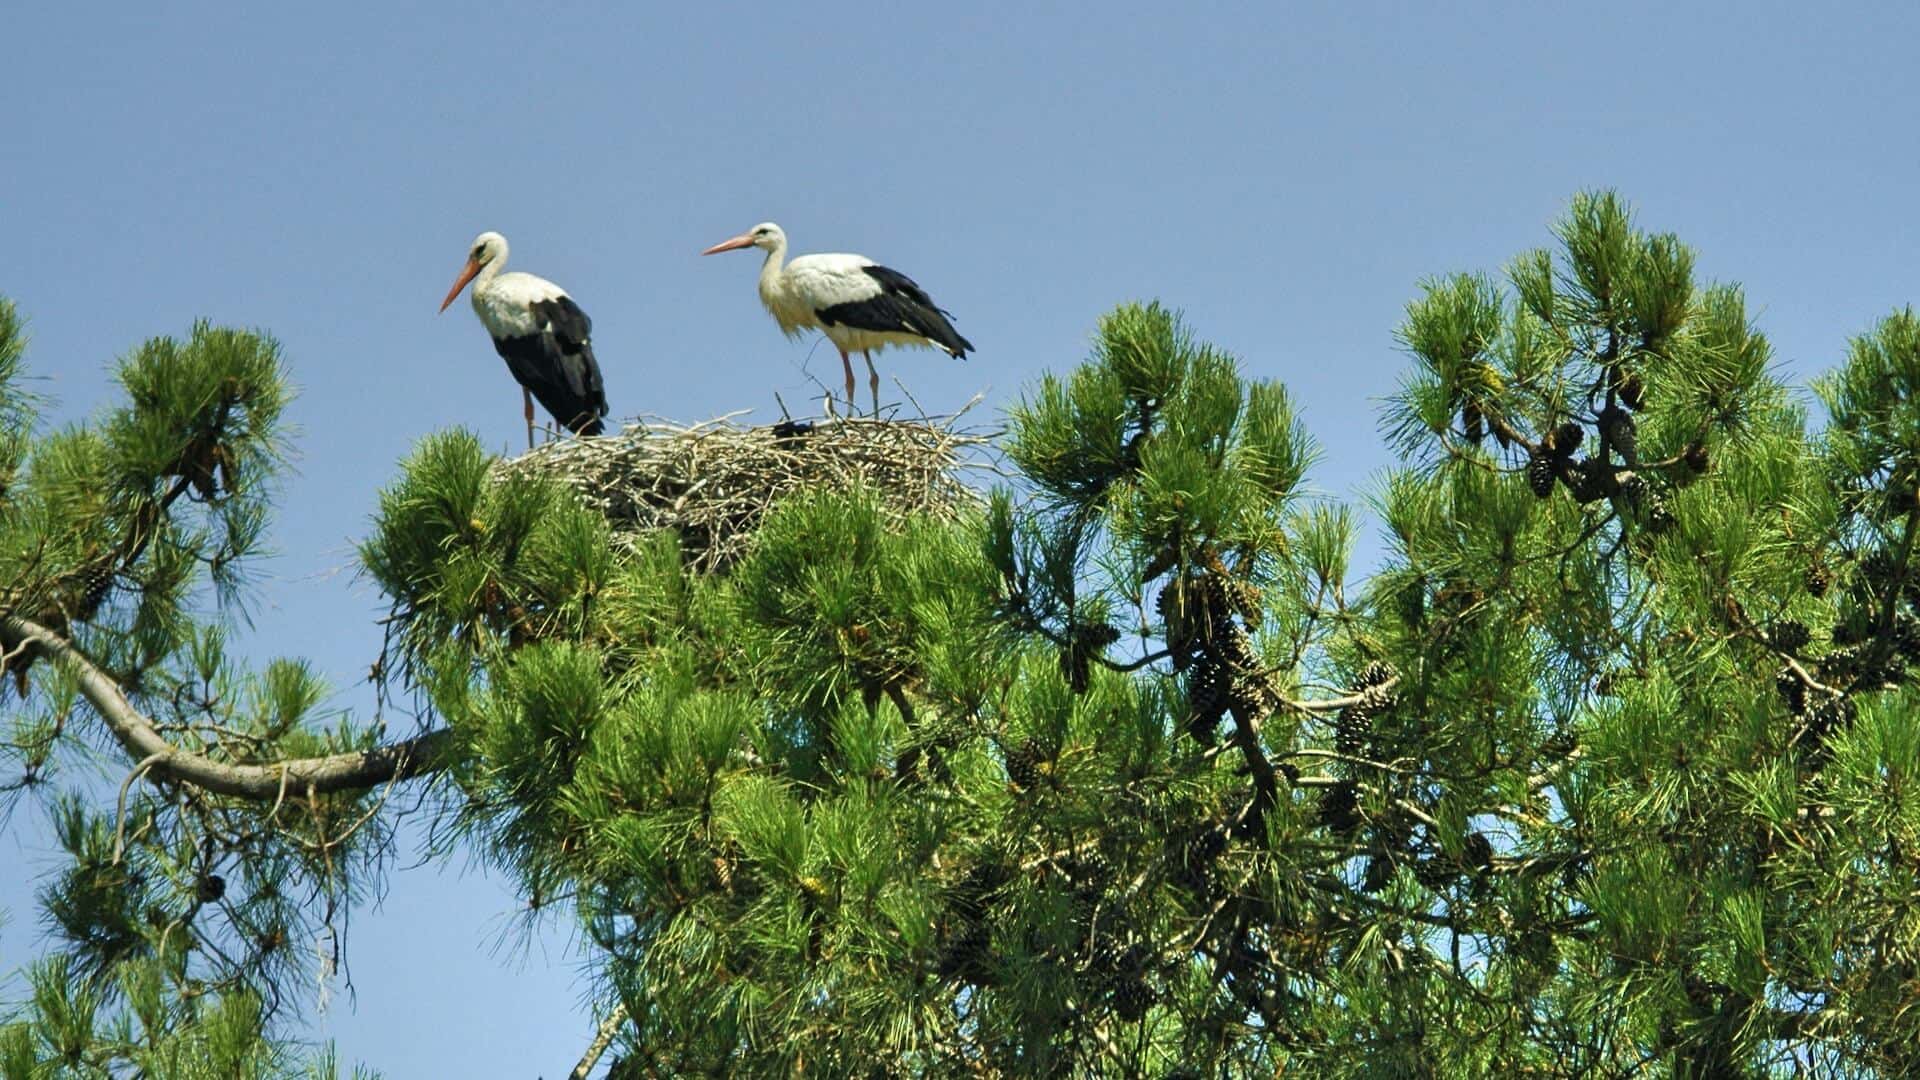 Cigüeñas blancas alrededor de Faro, Algarve. Avistamientos habituales en nuestros tours de observación de aves en la Ría Formosa.